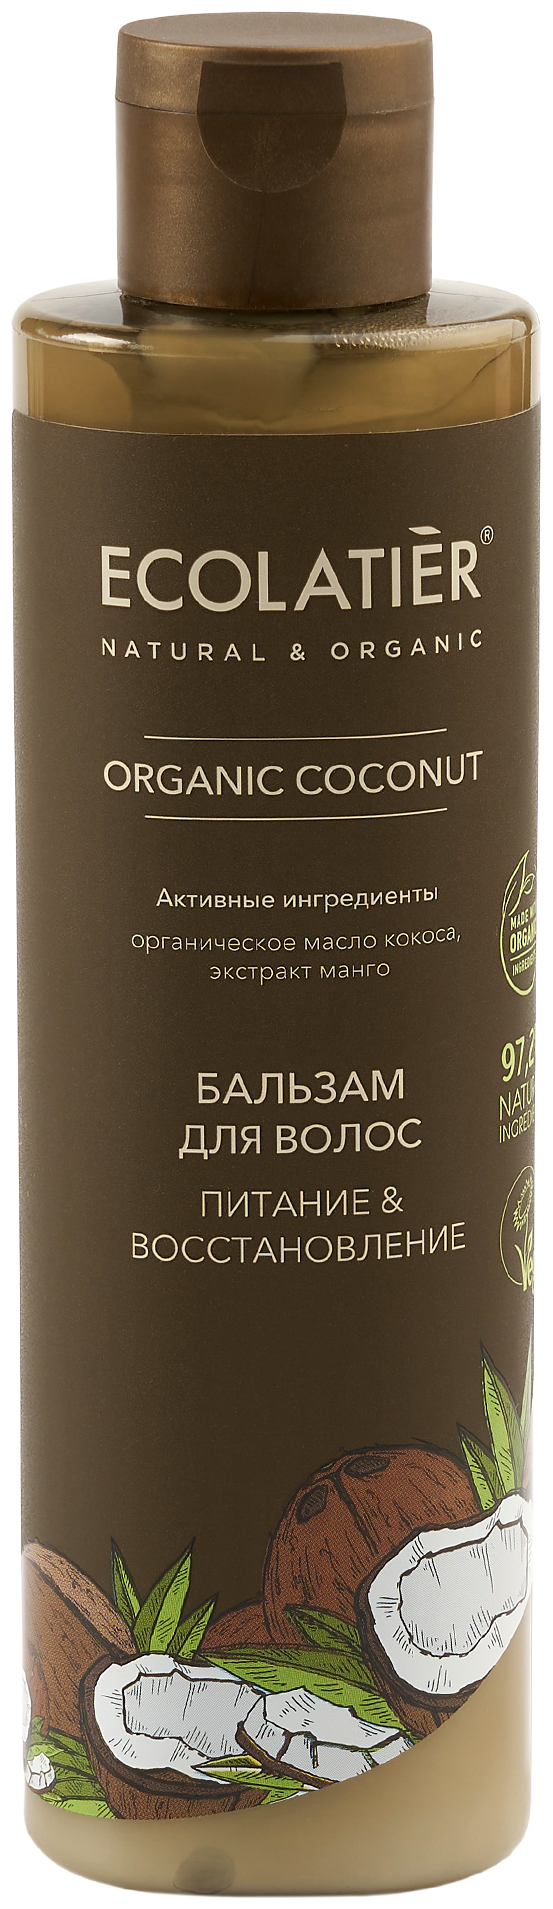 Ecolatier GREEN Бальзам для волос Питание & Восстановление Серия ORGANIC COCONUT, 250 мл